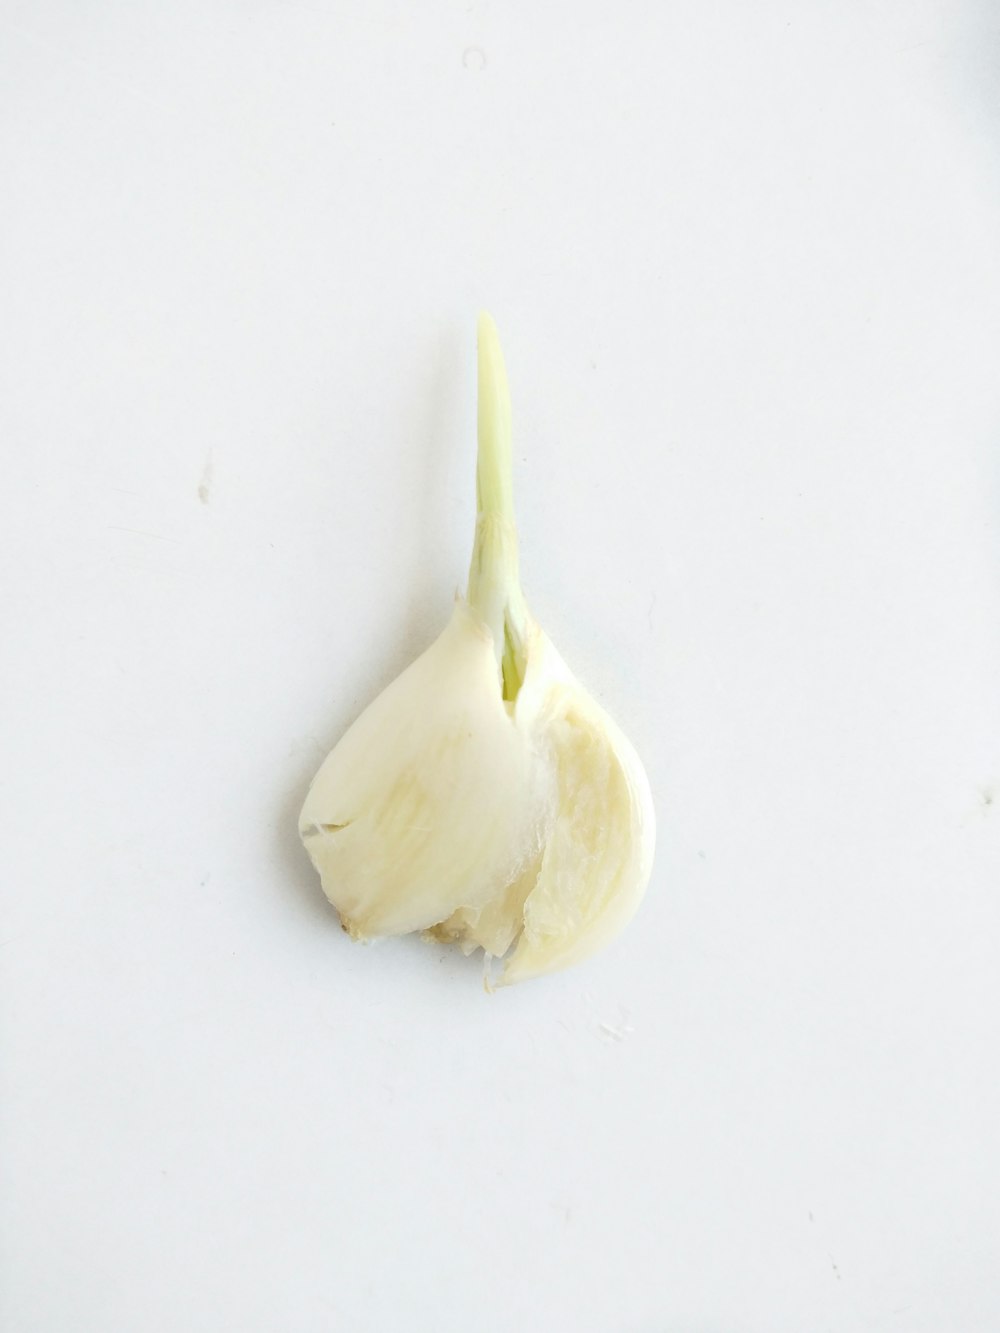 white garlic on white table